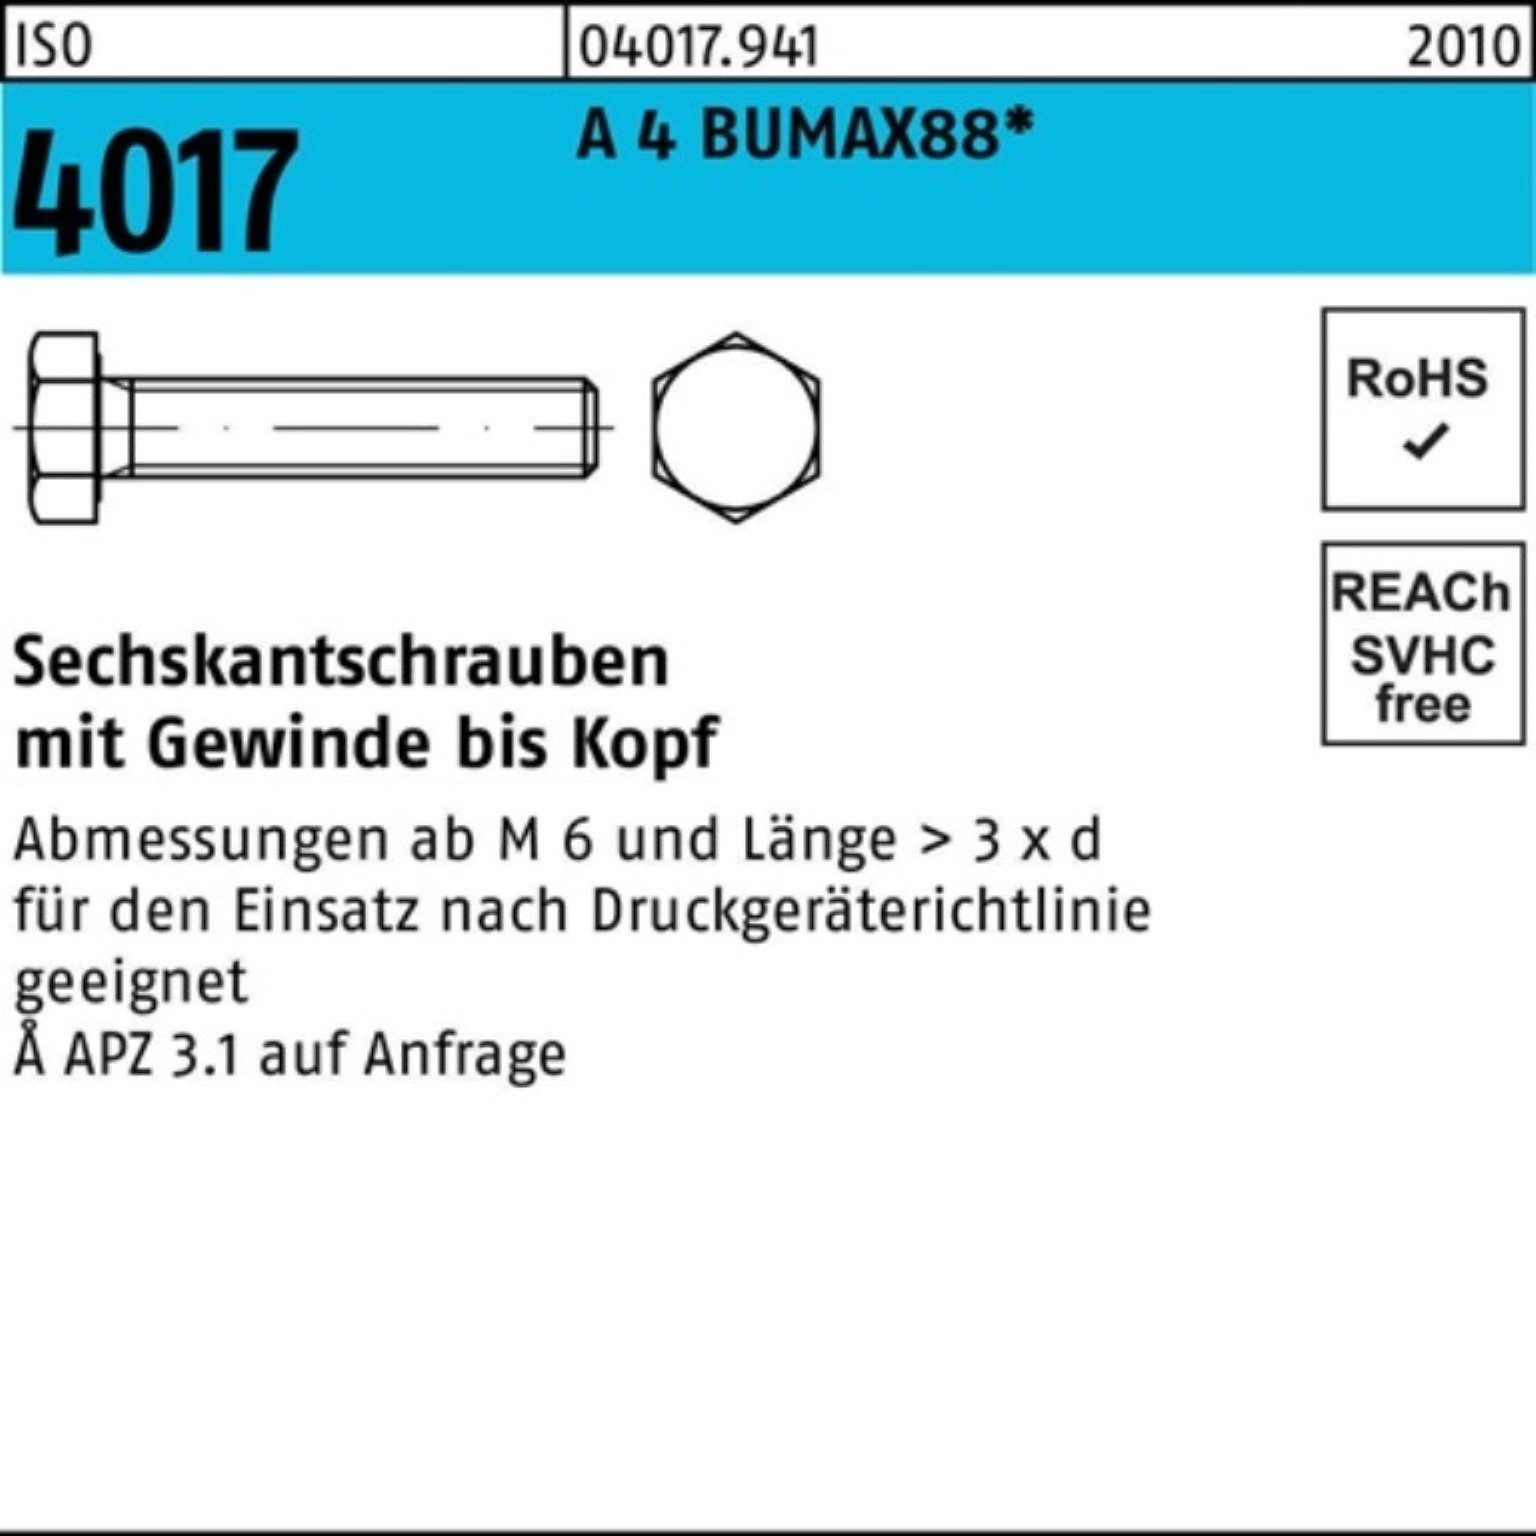 Bufab Sechskantschraube 100er Pack Sechskantschraube ISO 4017 VG M10x 30 A 4 BUMAX88 50 Stück